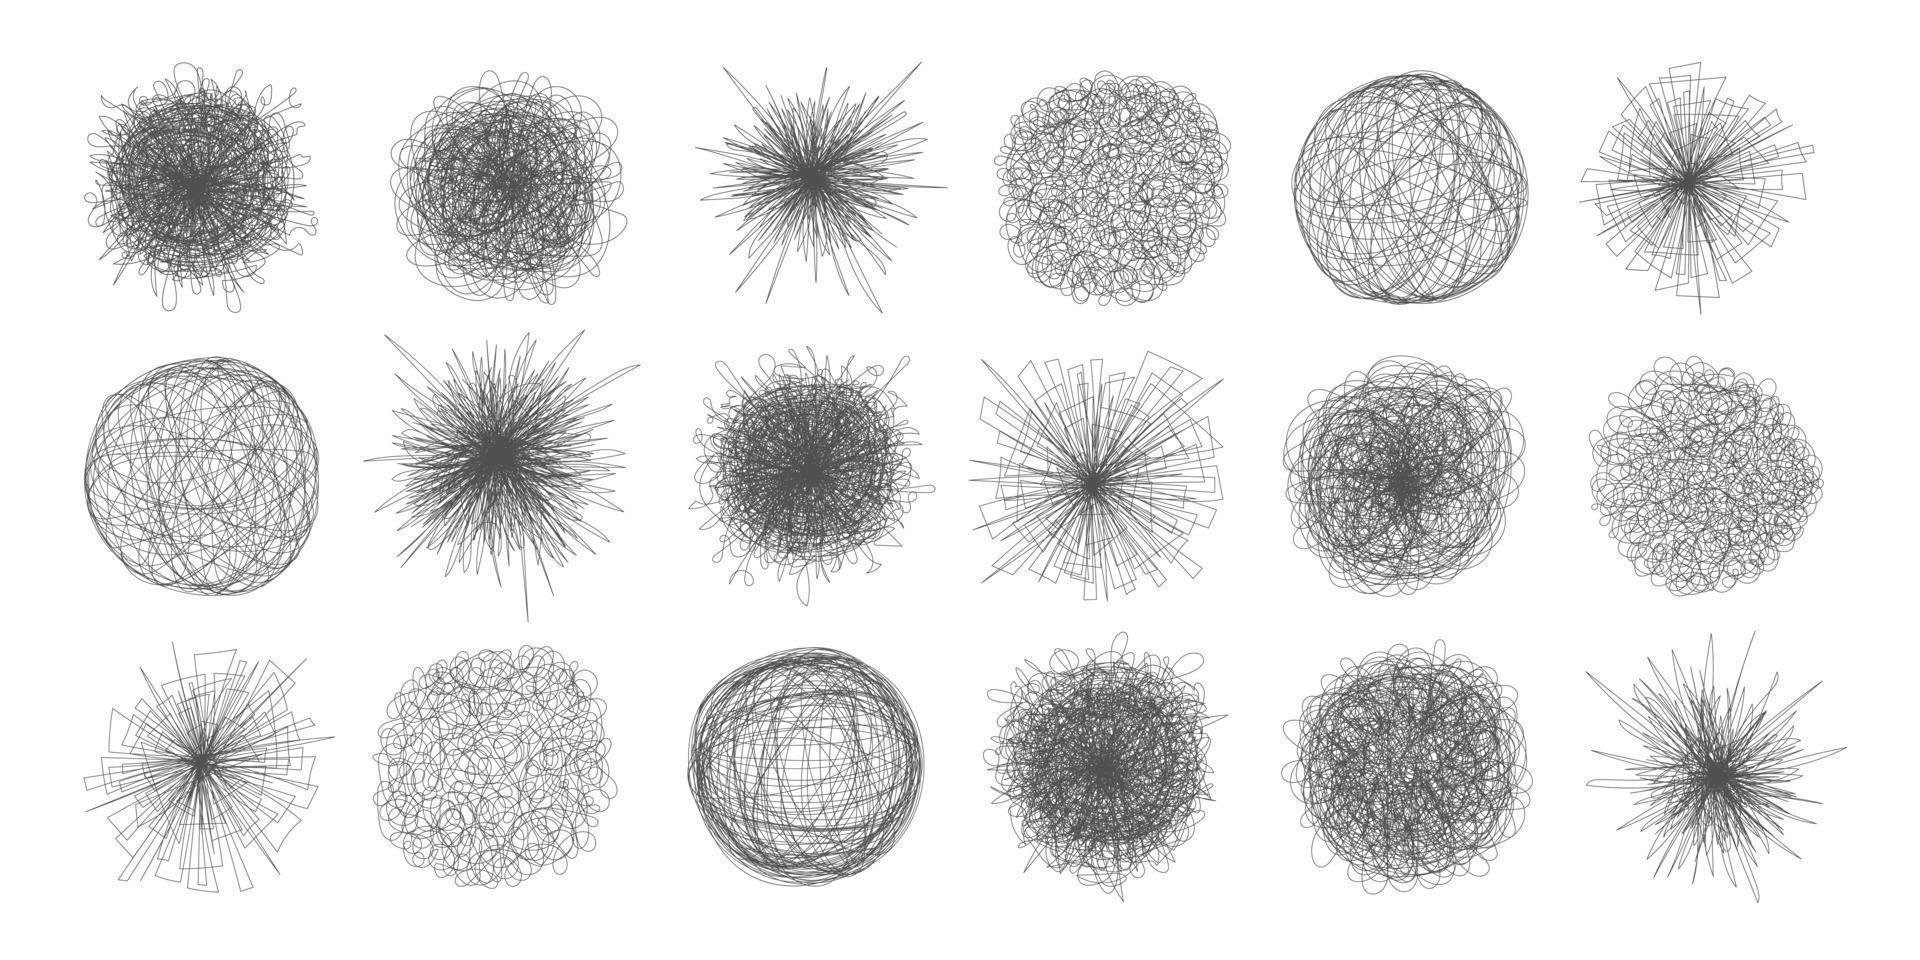 Verworrenes Chaos abstrakte handgezeichnete unordentliche Scribble-Ball-Vektor-Illustrationsset. vektor